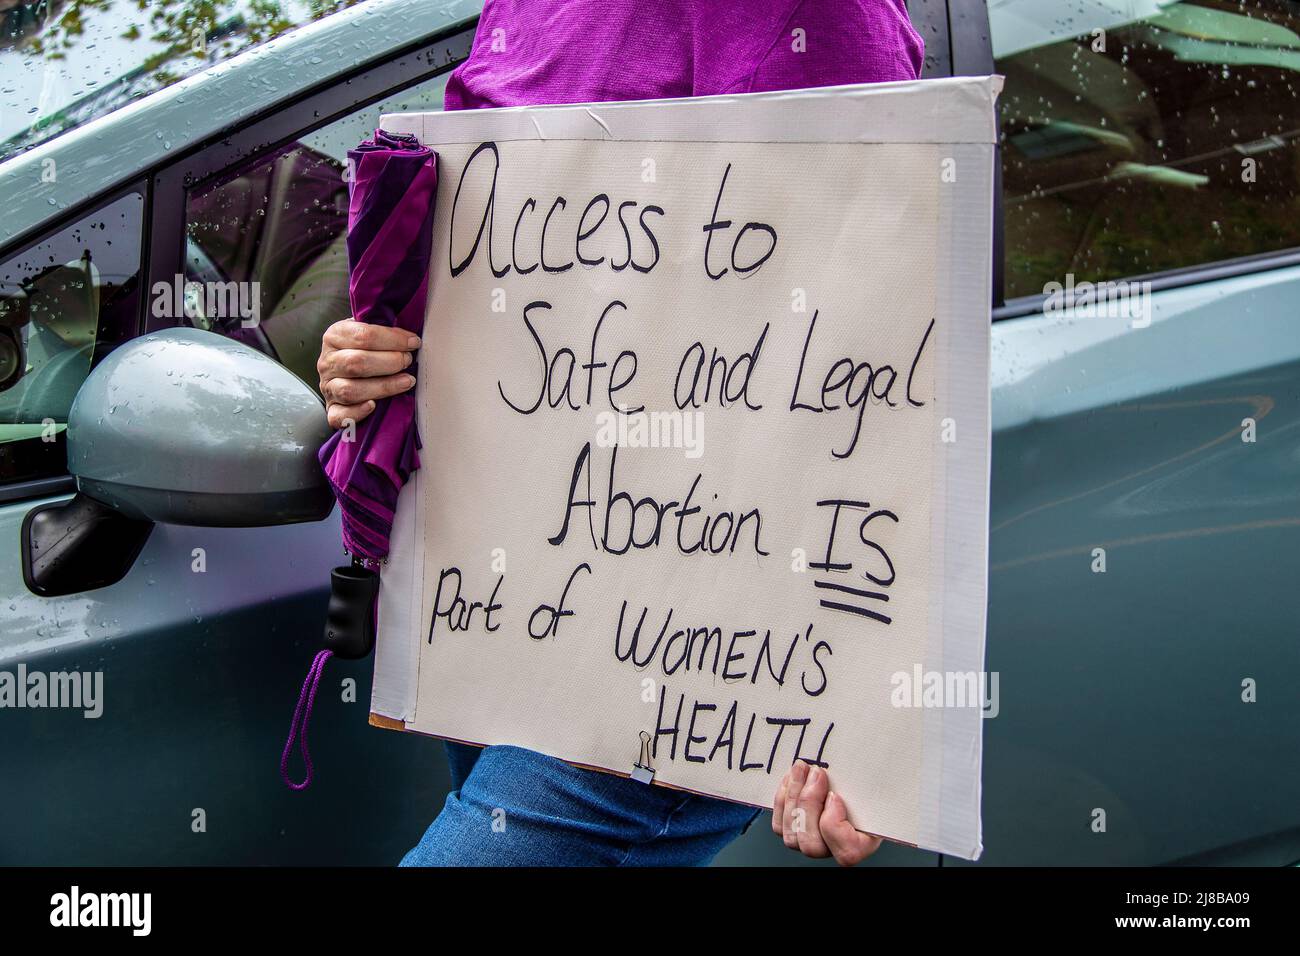 Home Made Zeichen lesen Zugang zu sicheren und rechtlichen Abtreibung ist Teil der Gesundheit von Frauen gehalten von Cropped Frau in lila Hemd hält Regenschirm bei c Stockfoto